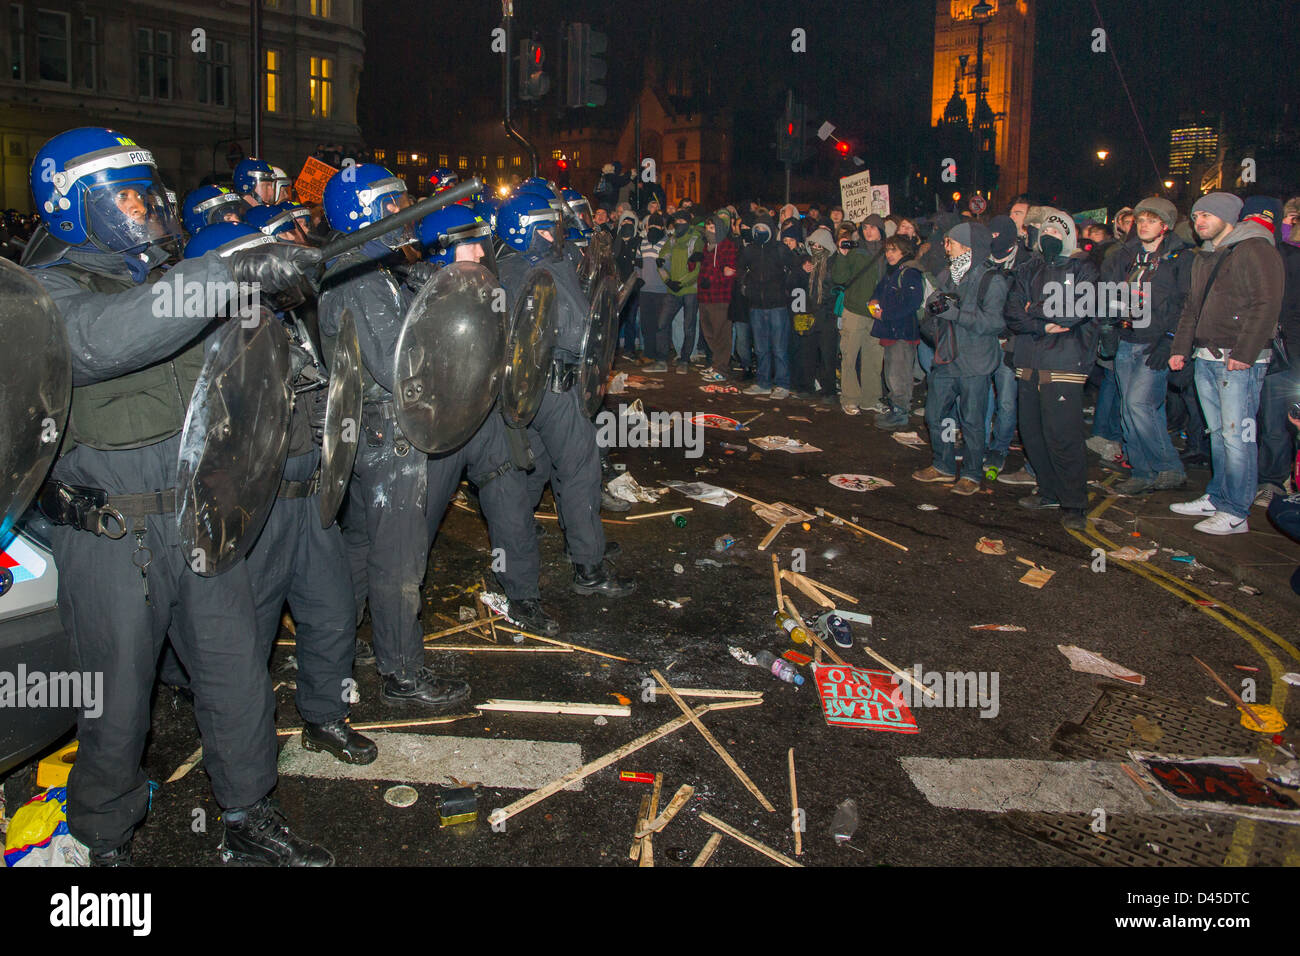 Polizei-Linie in voller Kampfausrüstung konfrontiert durch protestierende Studenten am Ende von Whitehall bei Nacht, Tag X3 Studentendemonstration, London, England Stockfoto